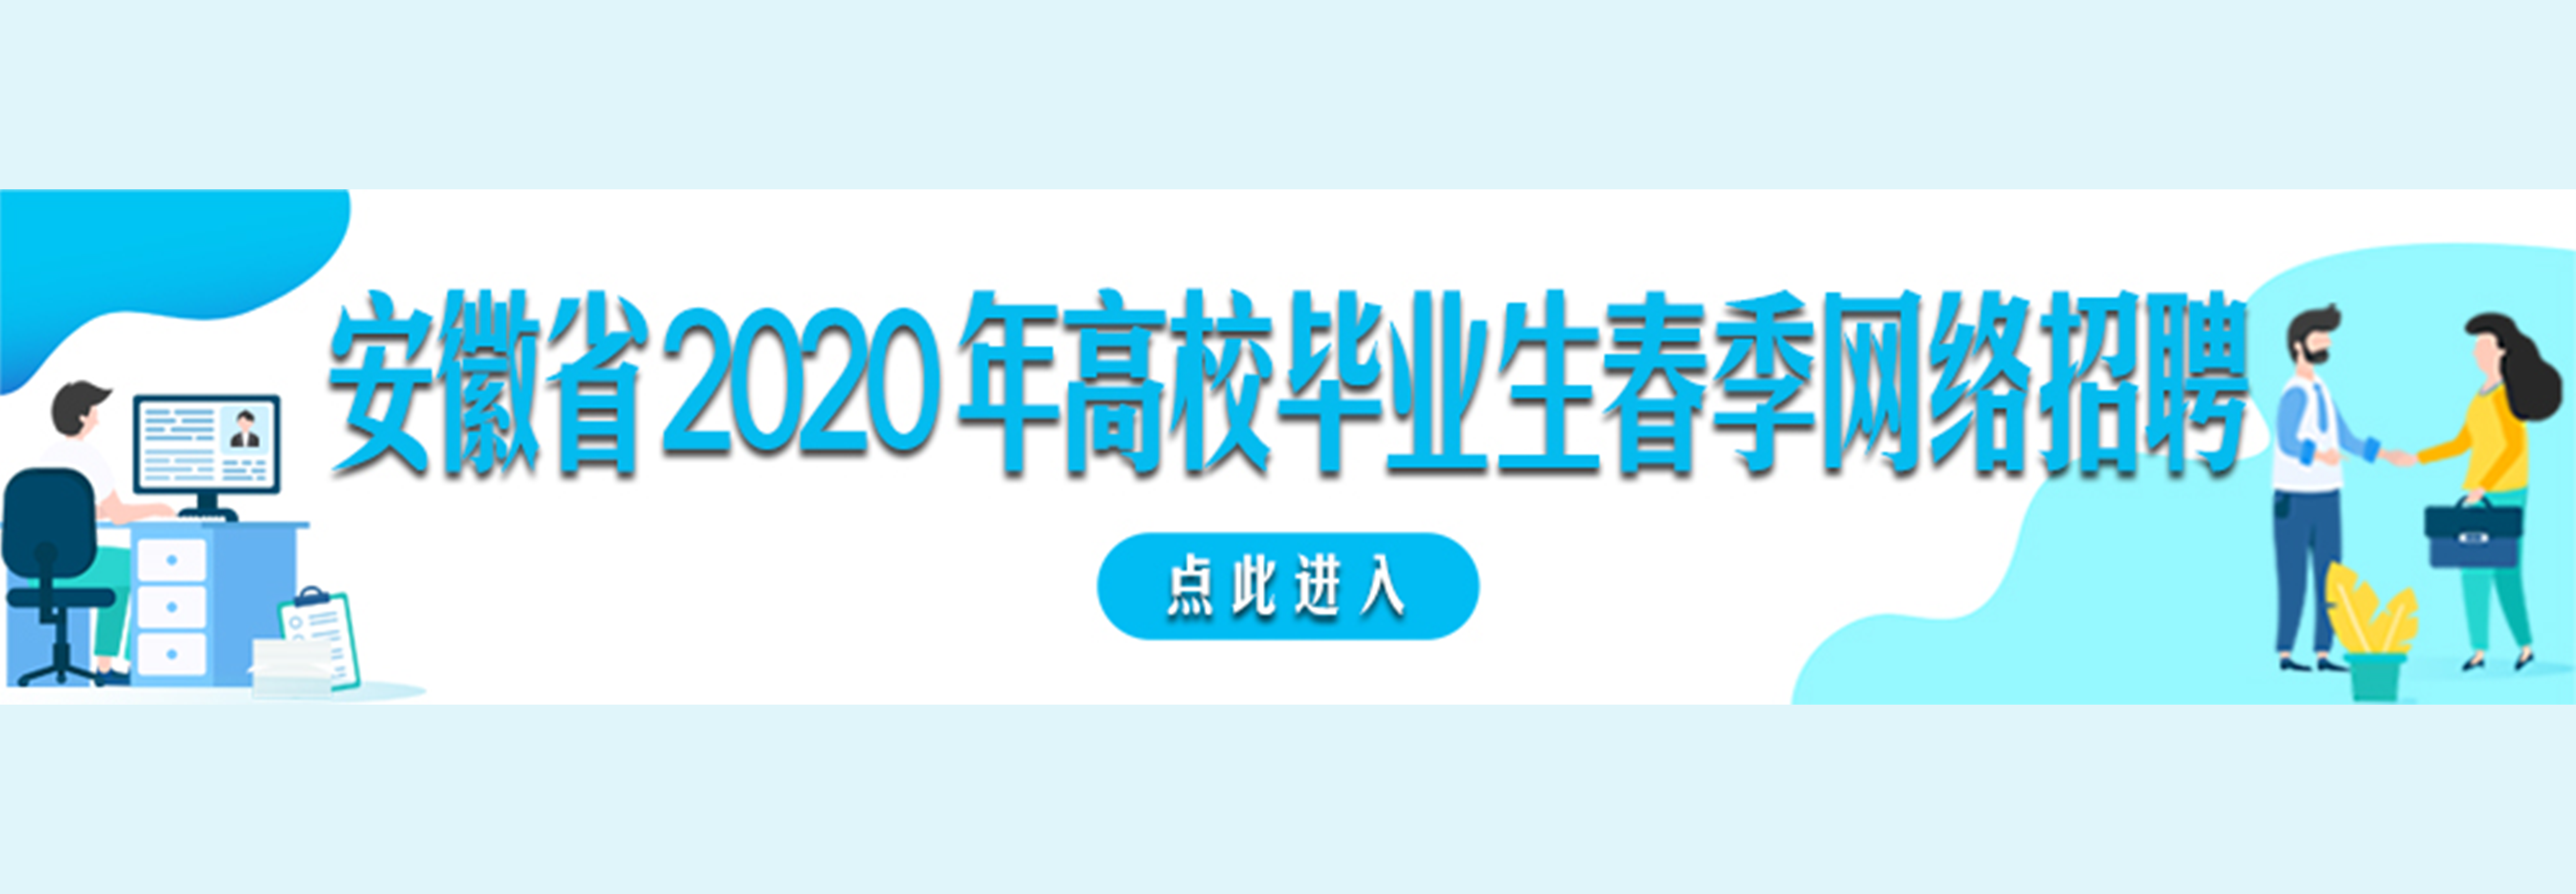 安徽省2020年高校毕业生春季网络招聘系列活动.png